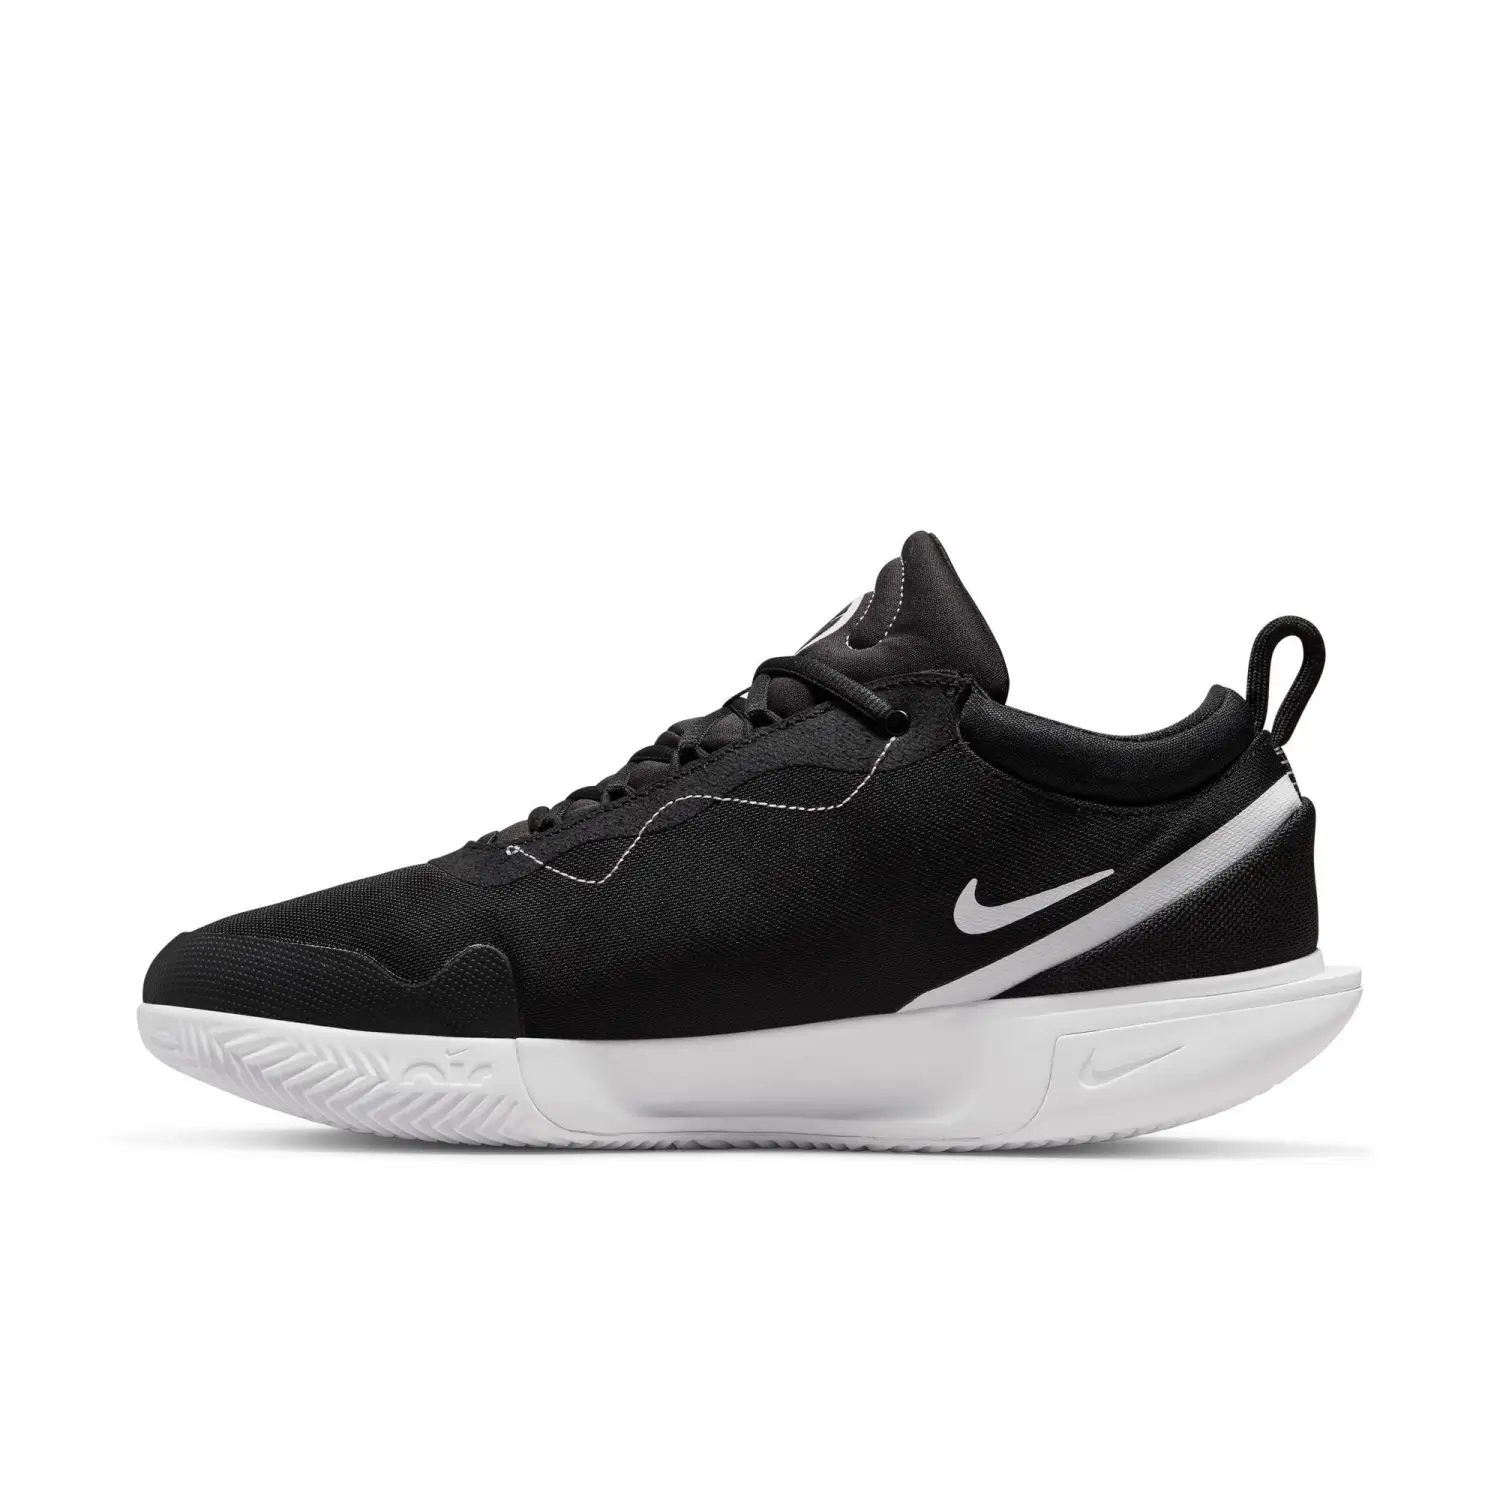 NikeCourt Zoom Pro Clay Court Siyah Erkek Tenis Ayakkabısı - DH2603-010